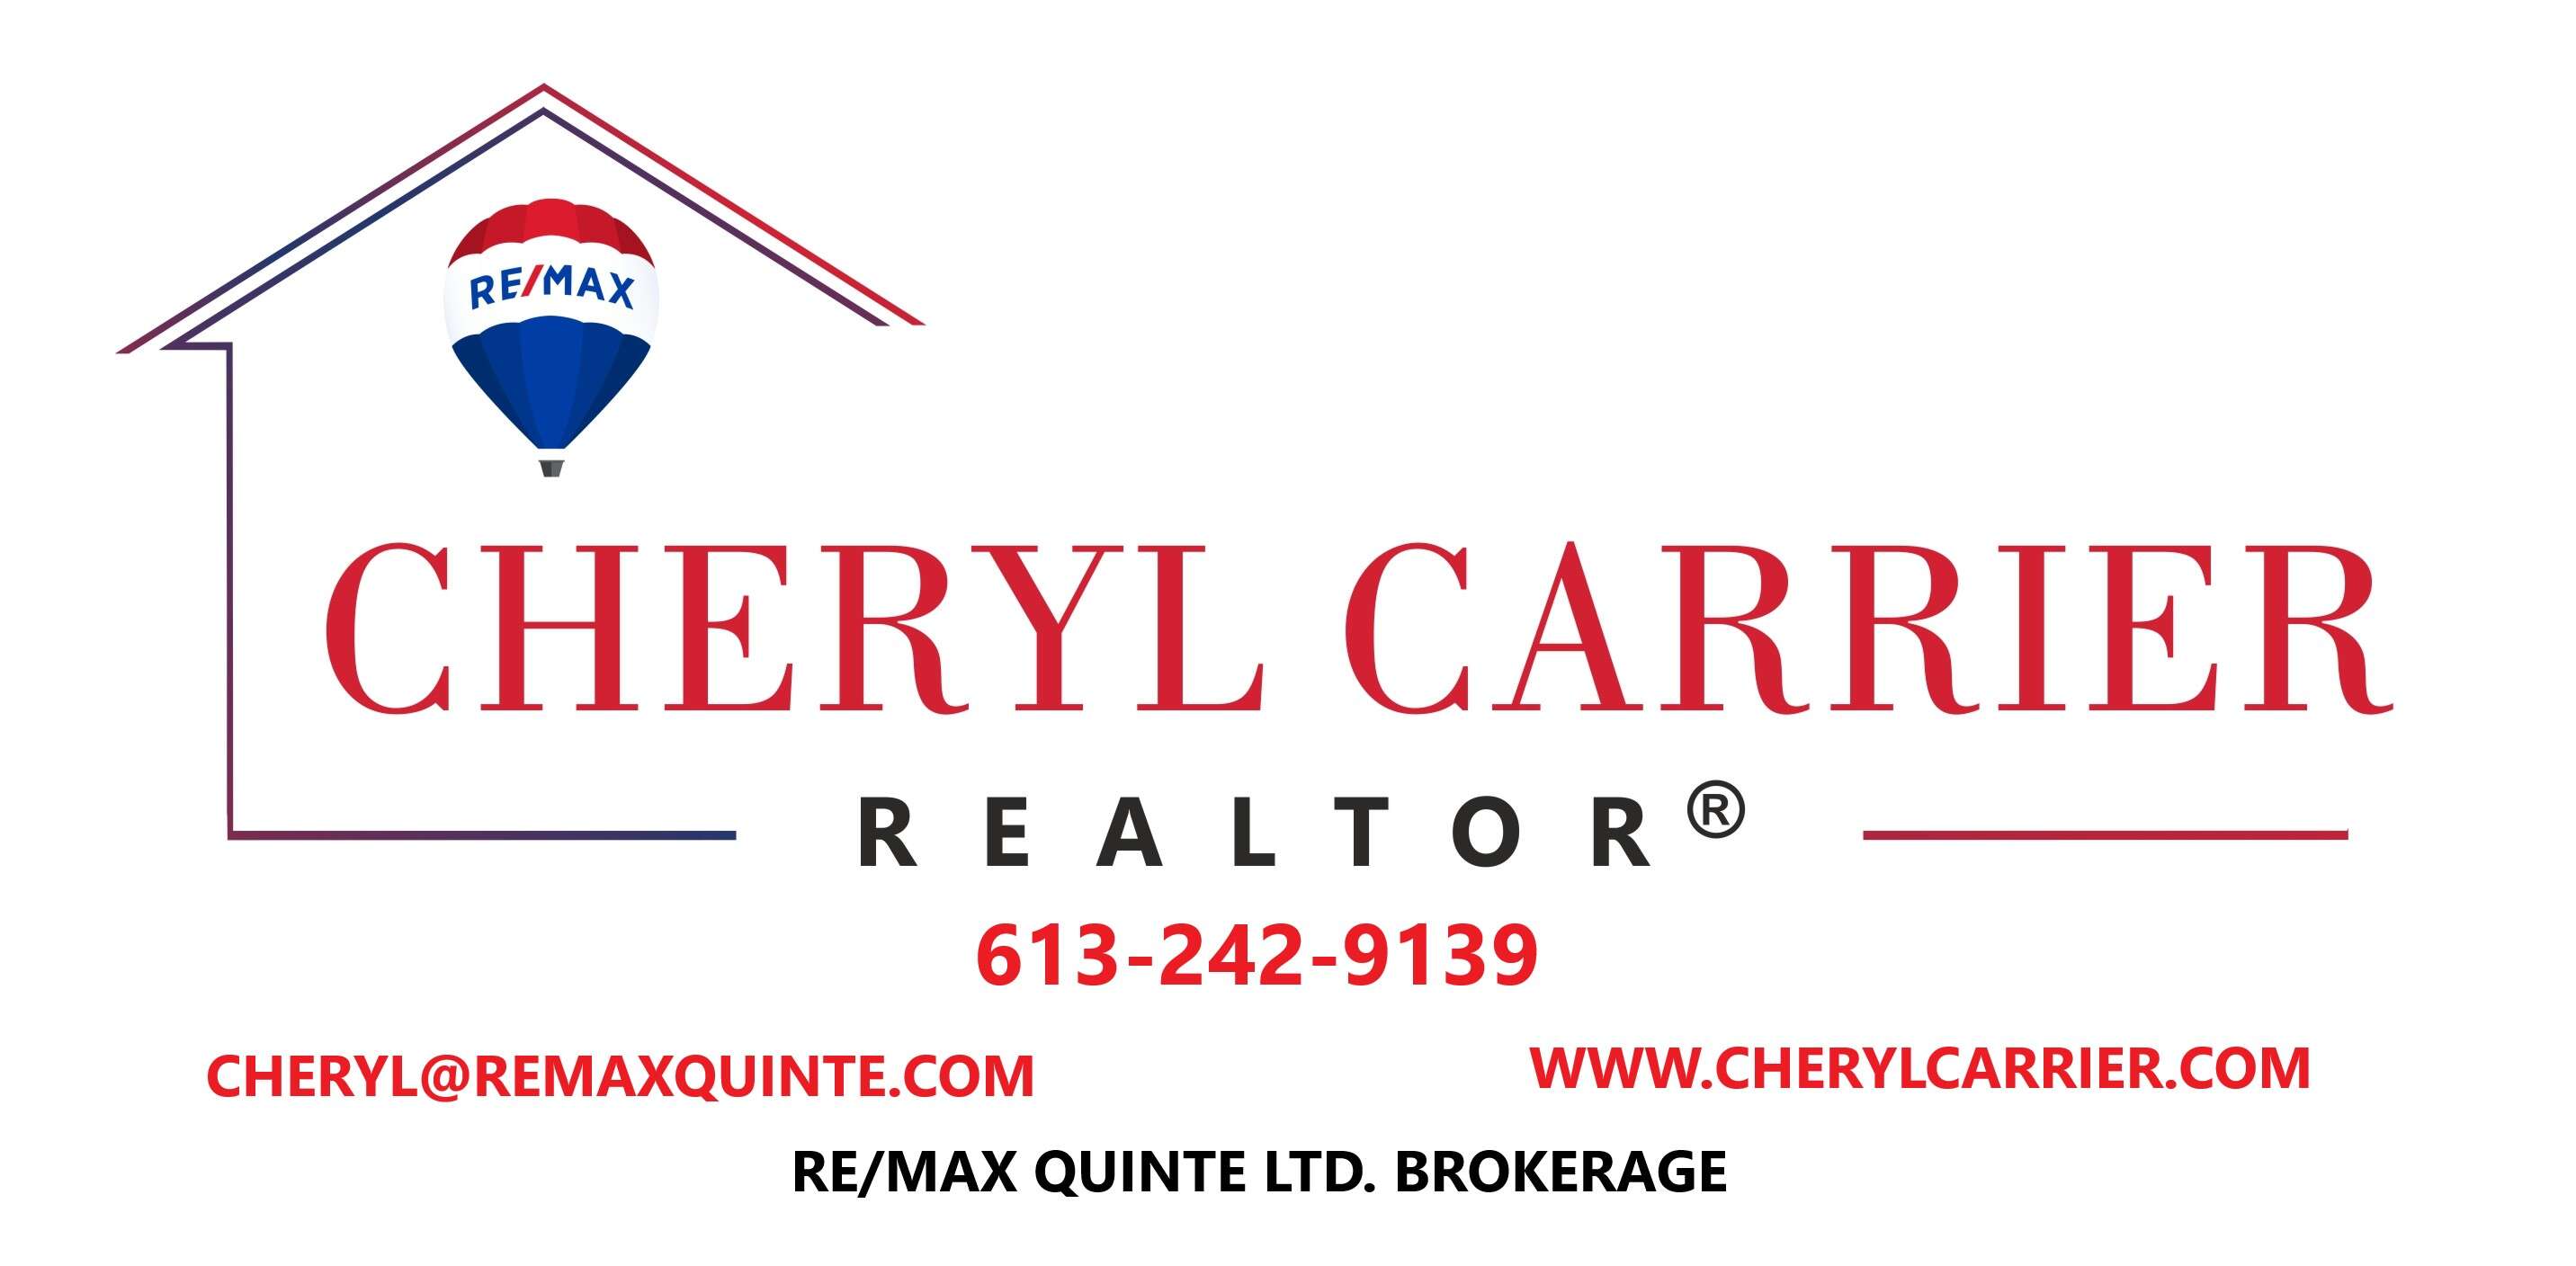 RE/MAX QuInte Ltd. Cheryl Carrier REALTOR®